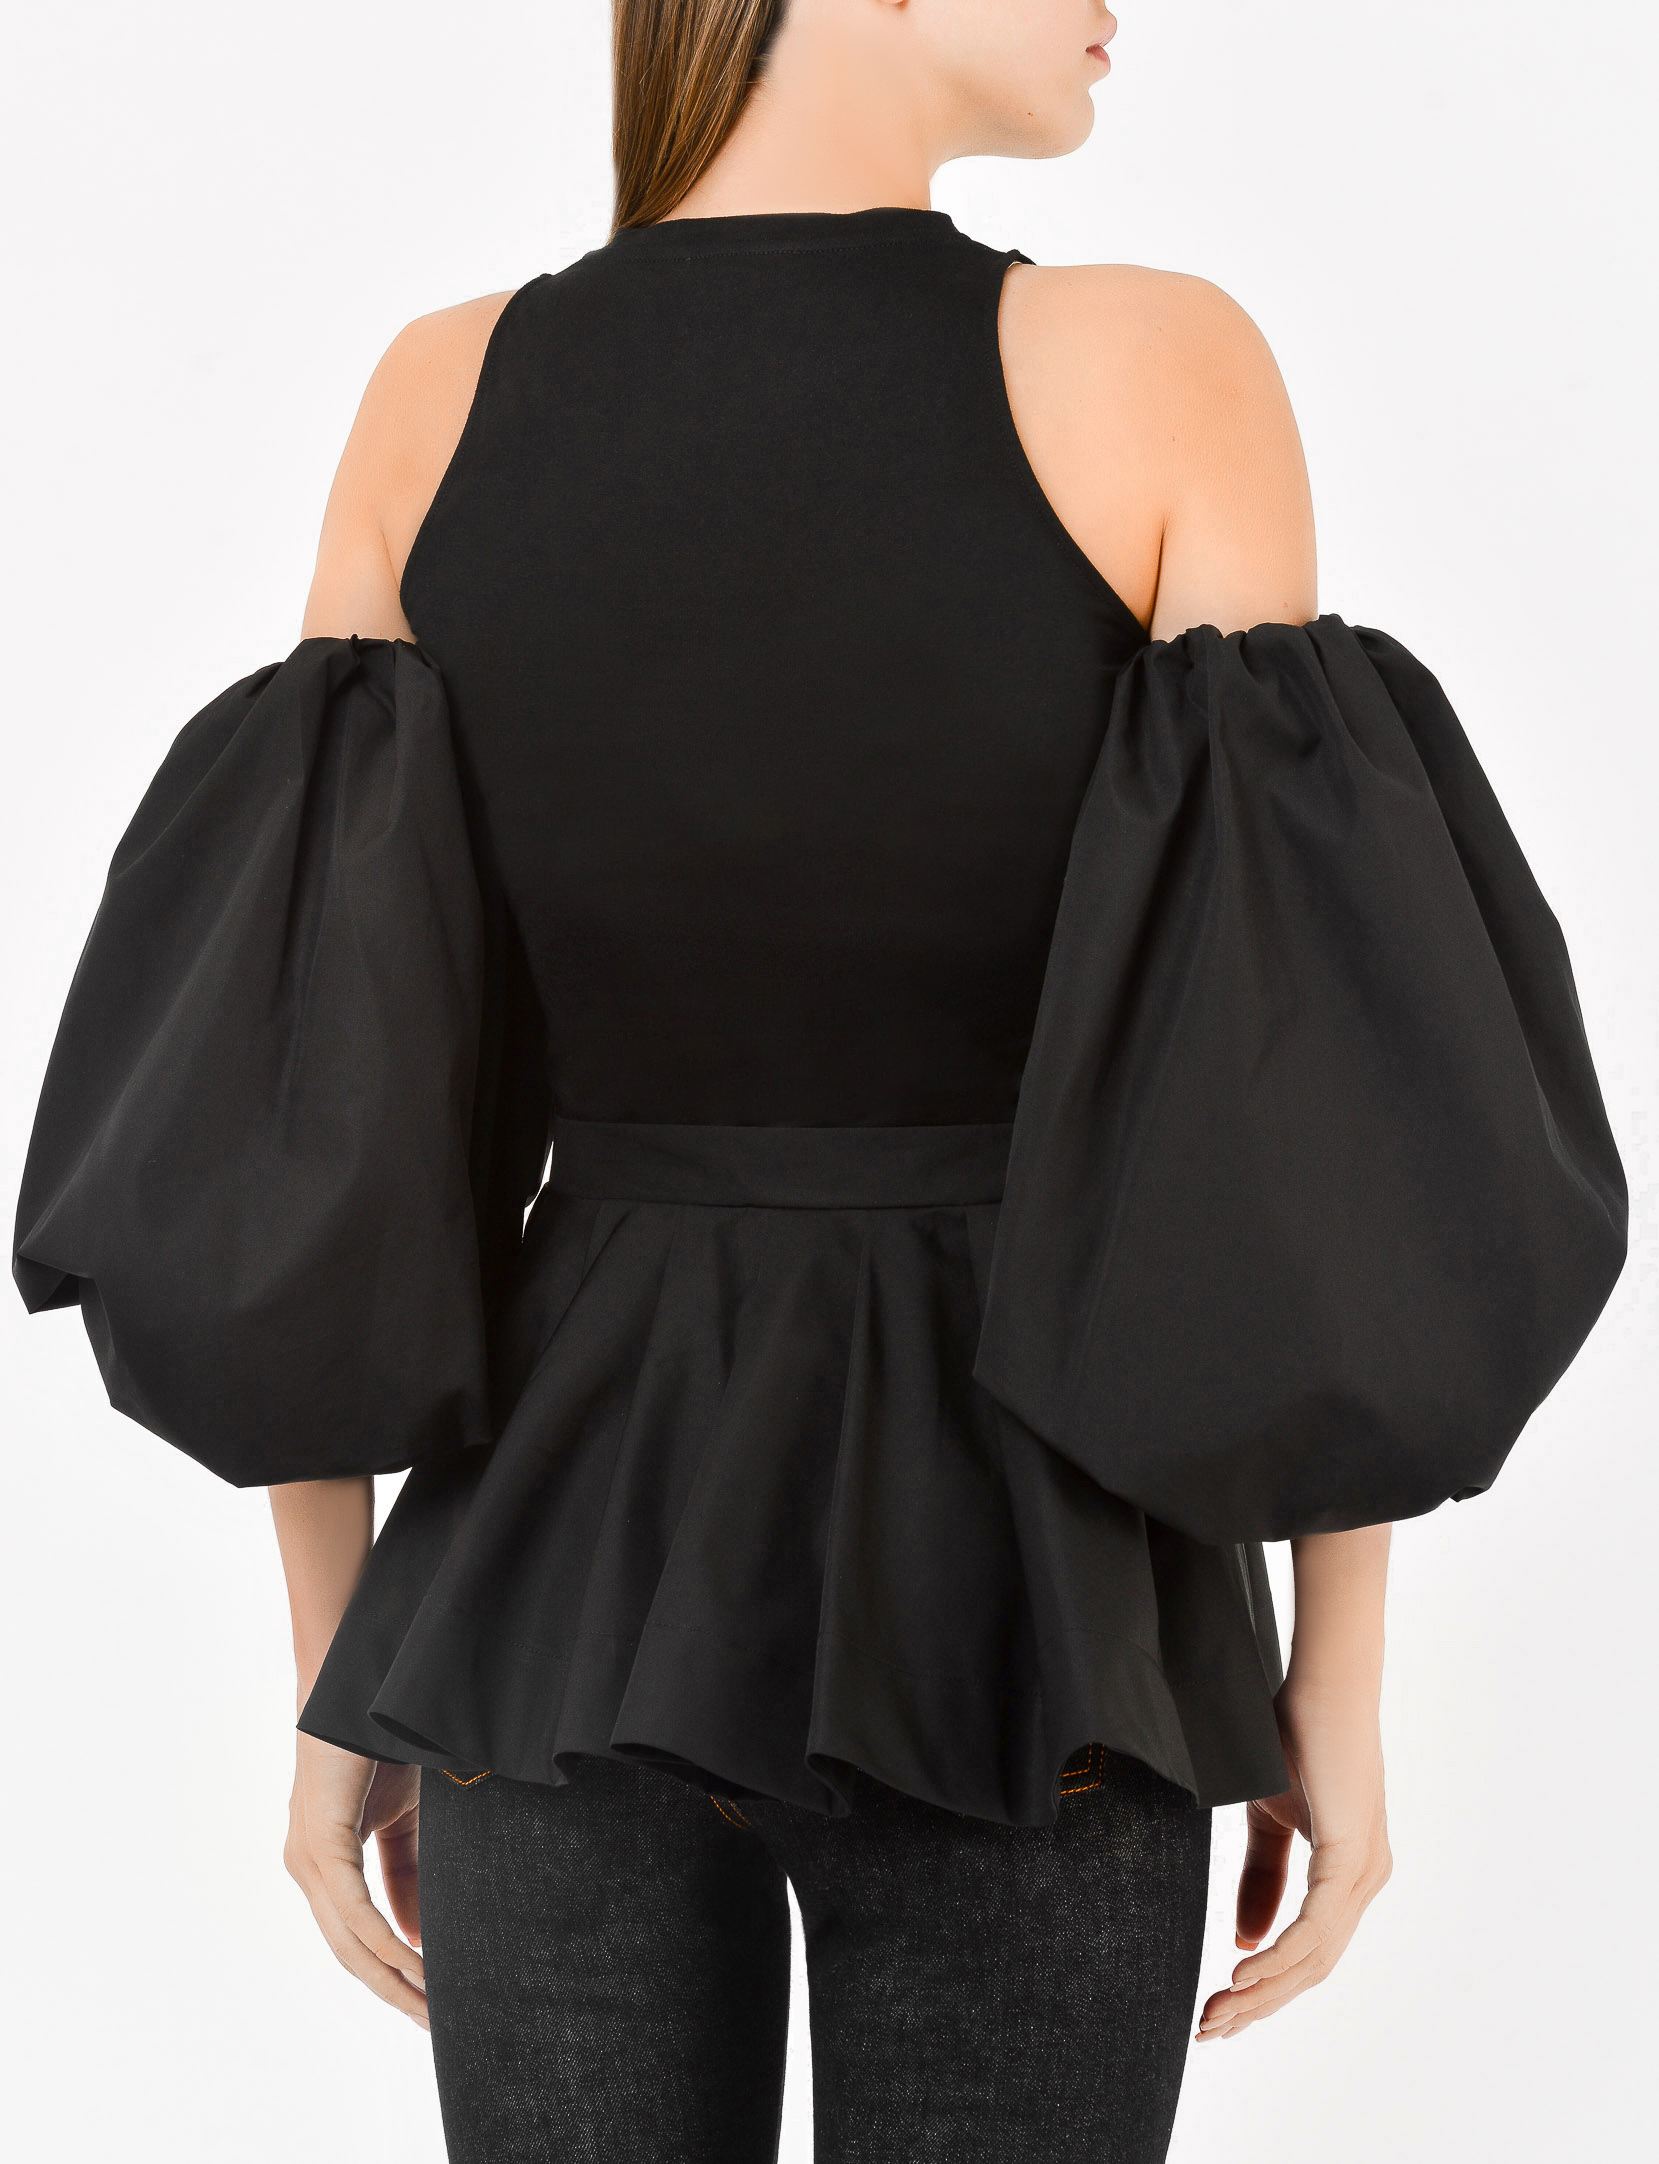 Блуза ALEXANDER MCQUEEN 627350 QLAAA, цвет: Черный, Женский